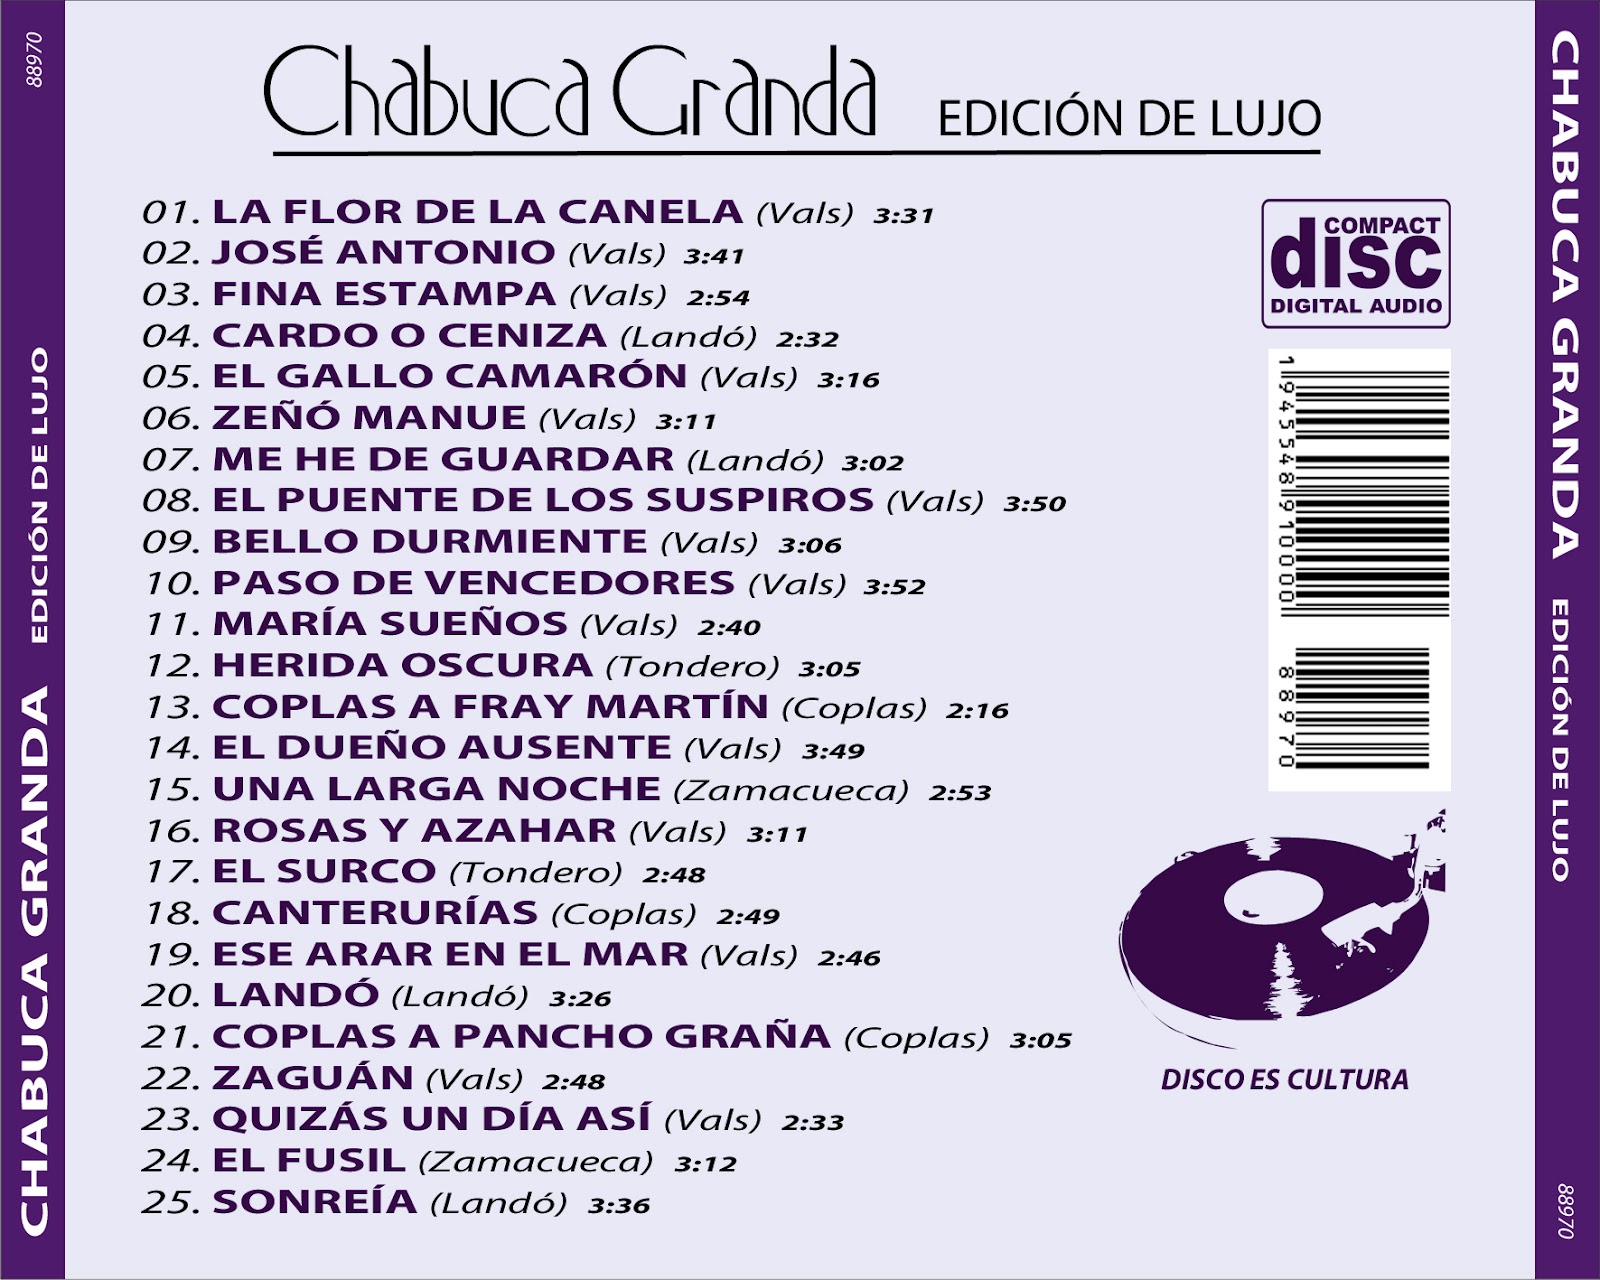 Cd Chabuca Granda -Edición de lujo Chabuca+Granda+-+Edici%25C3%25B3n+de+Lujo+-+Back